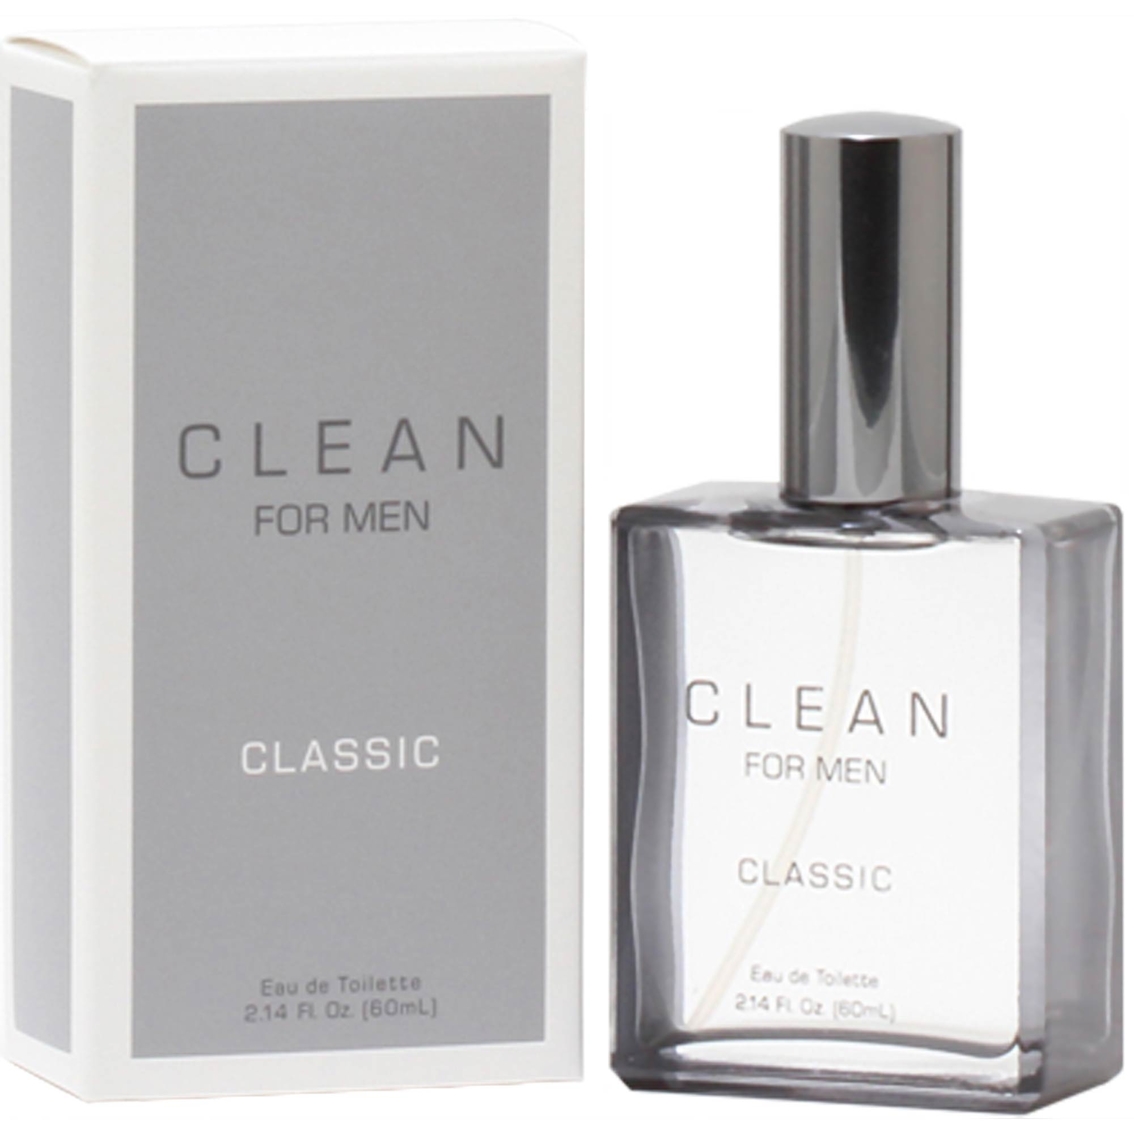 Clean Man by Clean Eau De Toilette Spray - Image 2 of 2